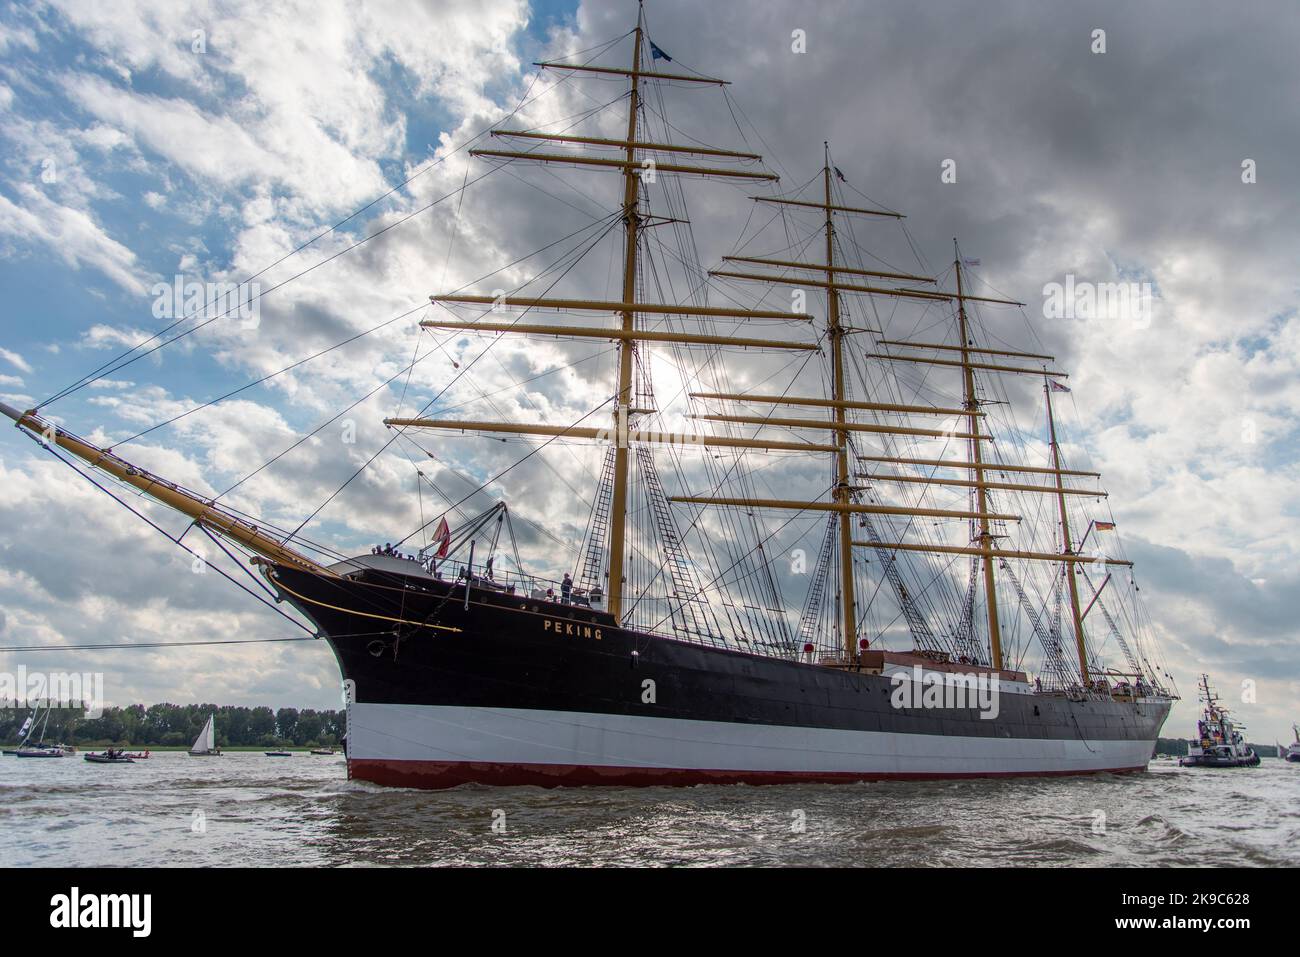 Le grand bateau Pékin - Grand vieux vieux grand navire sur la rivière elbe près de Hambourg Allemagne - Die Pékin kommt nach Hambourg Banque D'Images